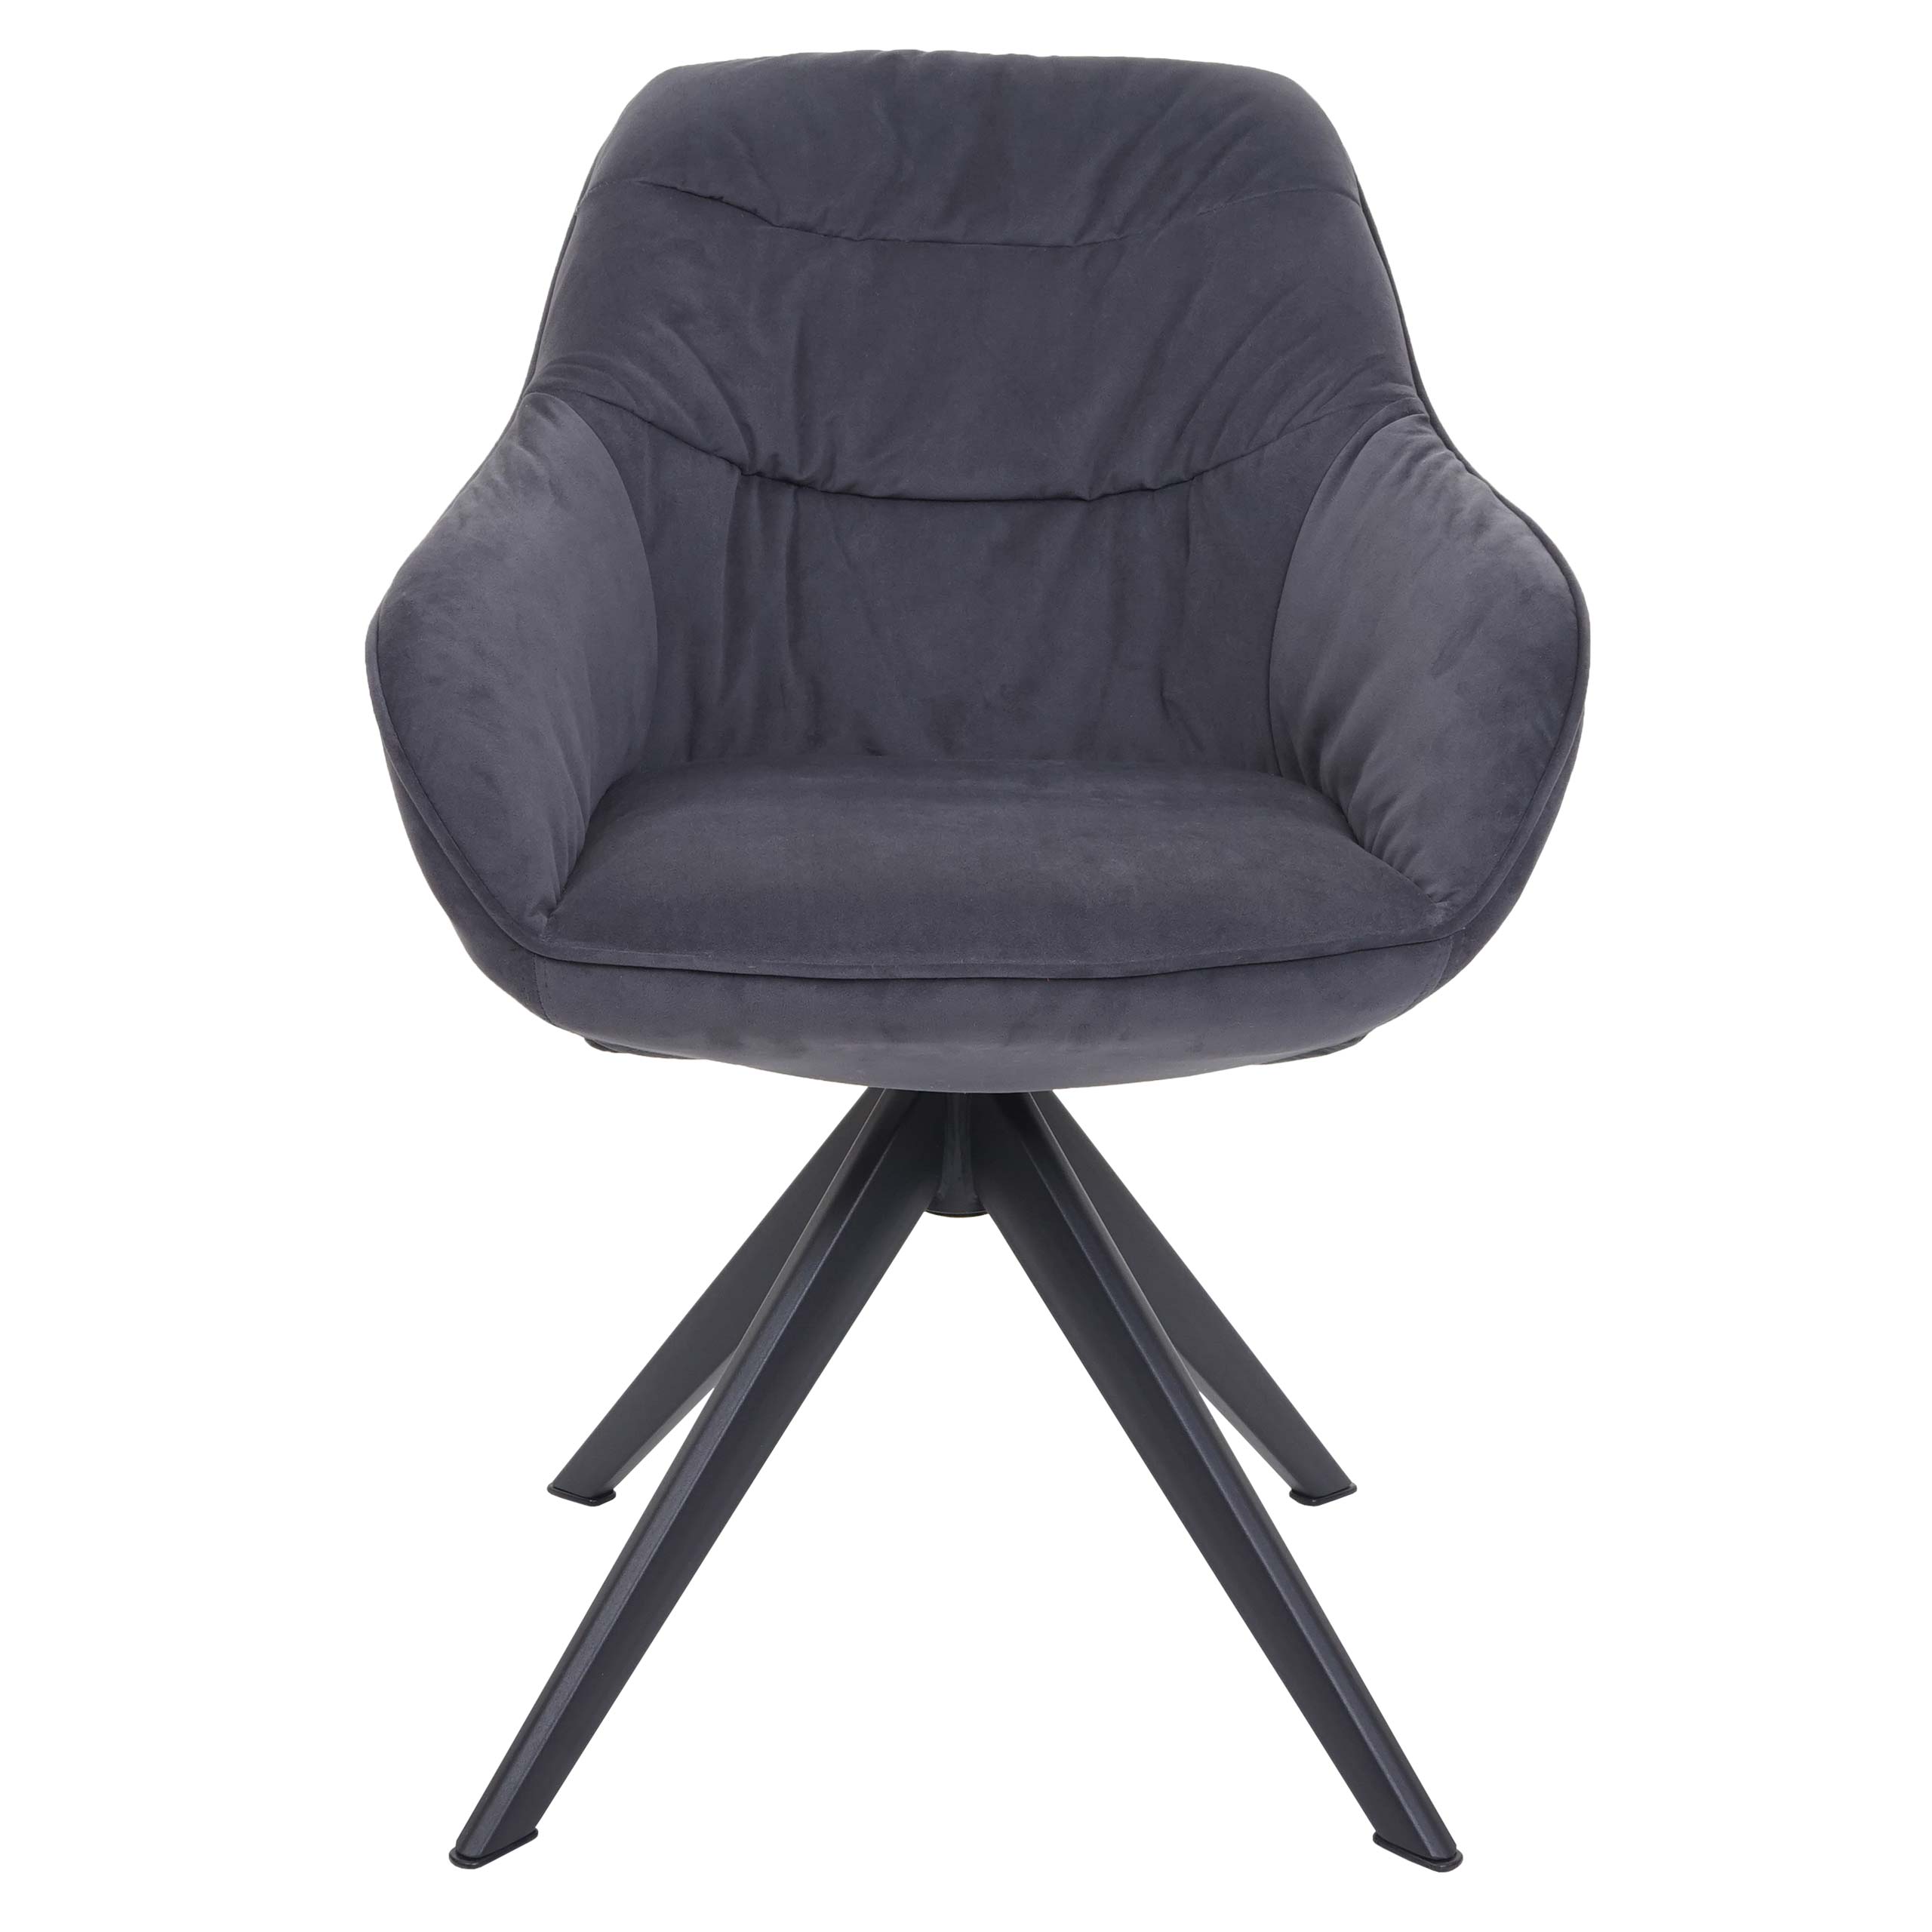 Esszimmerstuhl HWC-K28, Küchenstuhl Stuhl mit Armlehne drehbar Metall Stoff  | eBay